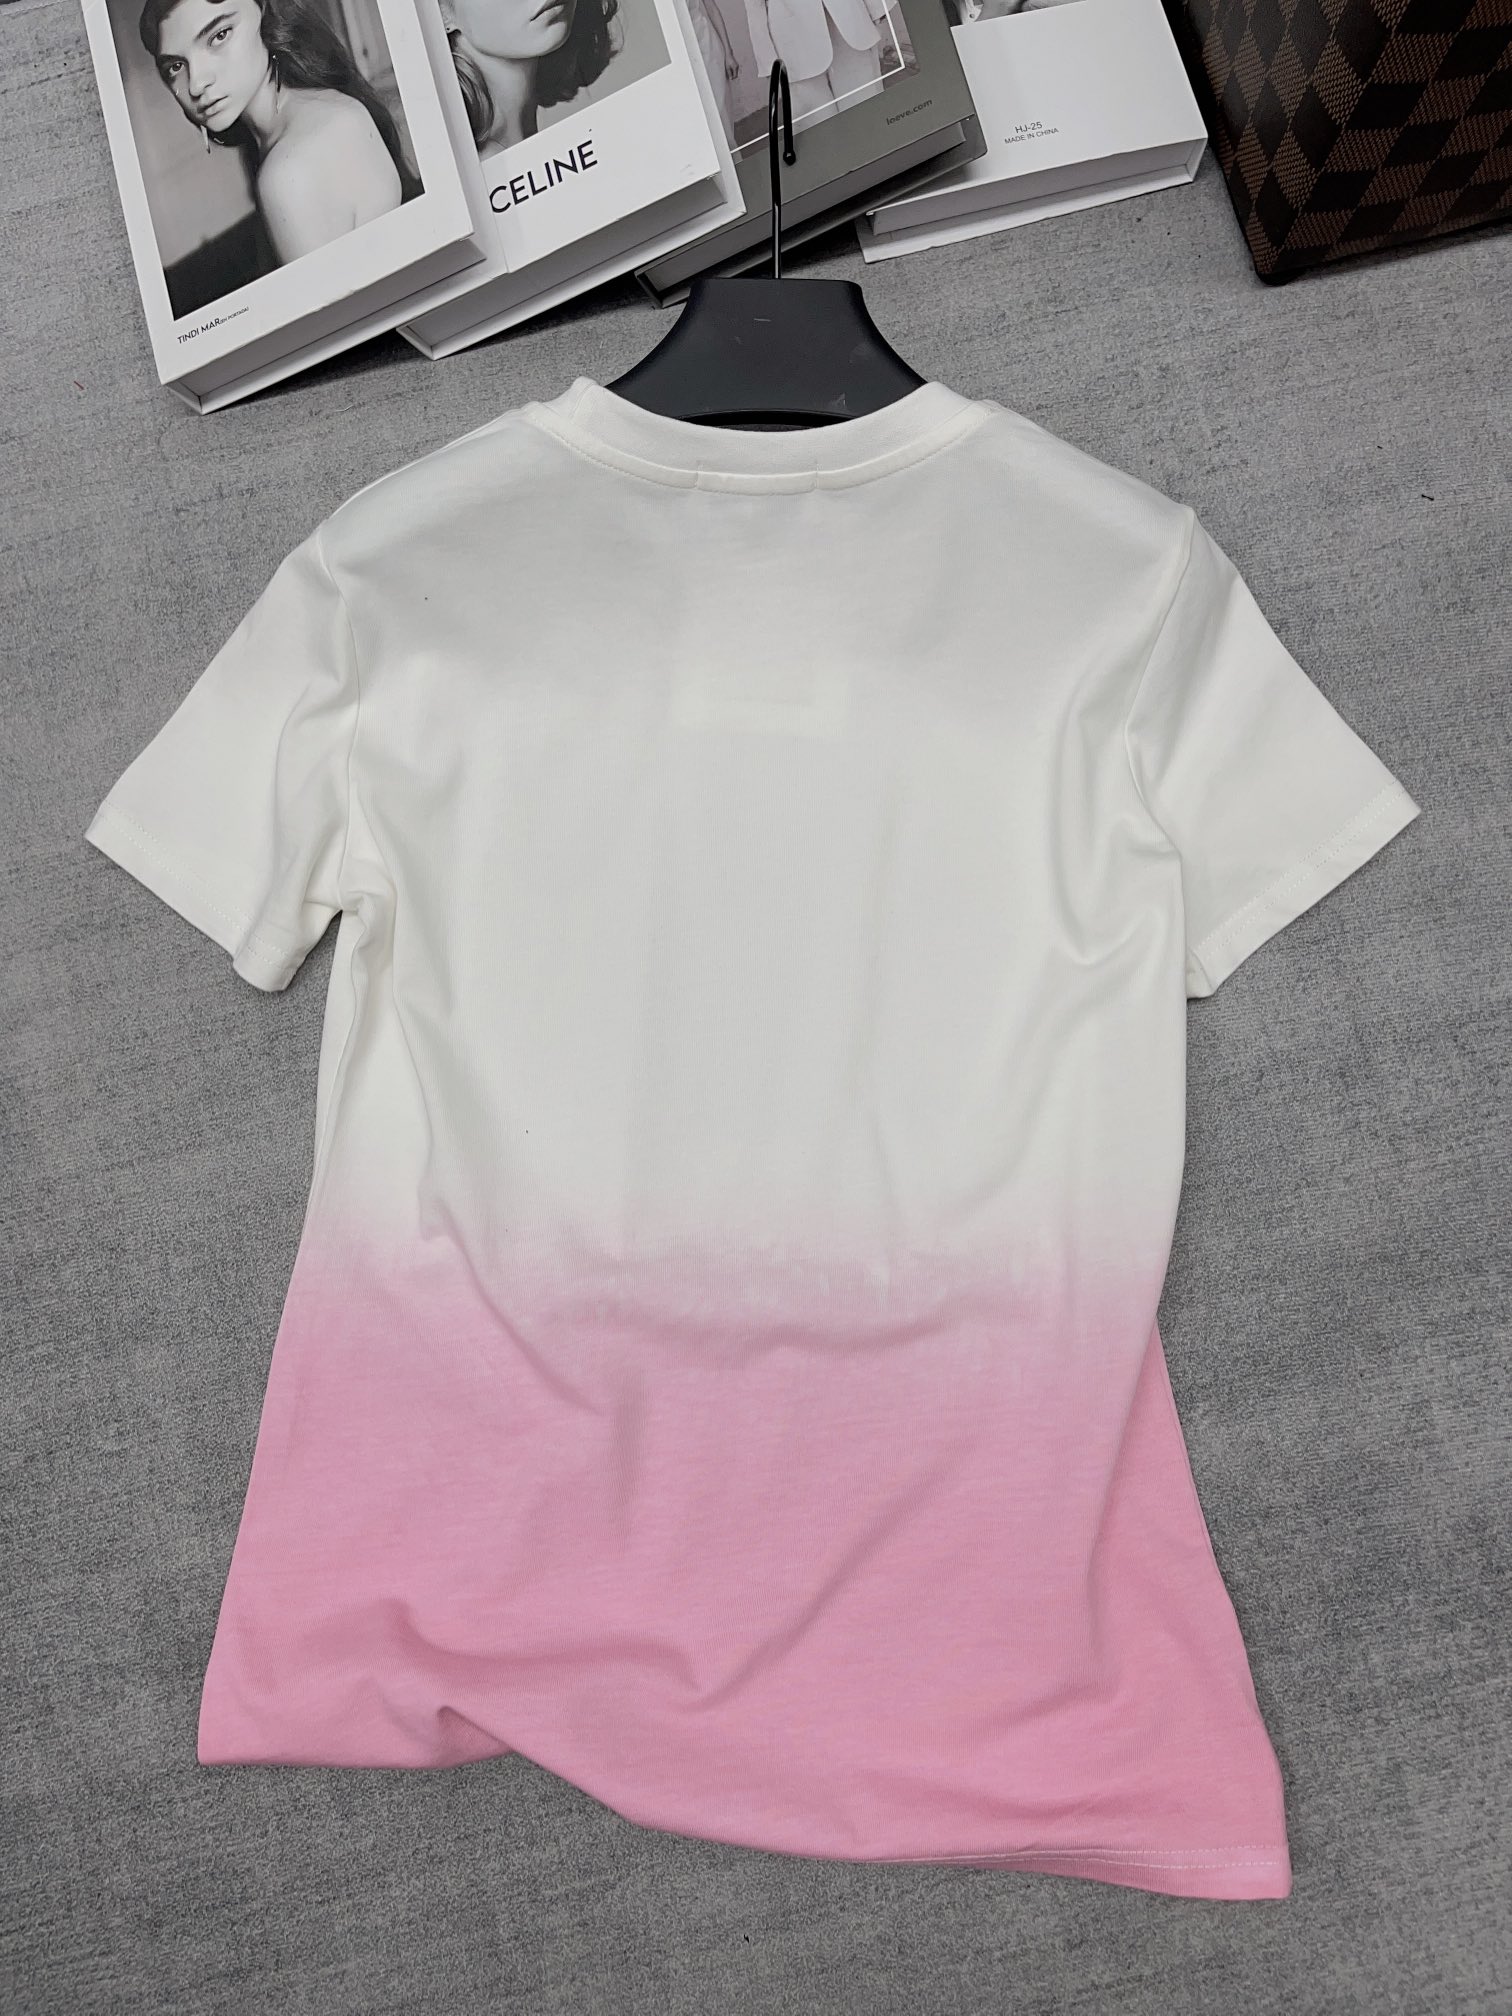 オシャレにお得100%新品シャネルTシャツ偽物 ラウンドネックの半袖Tシャツ_4